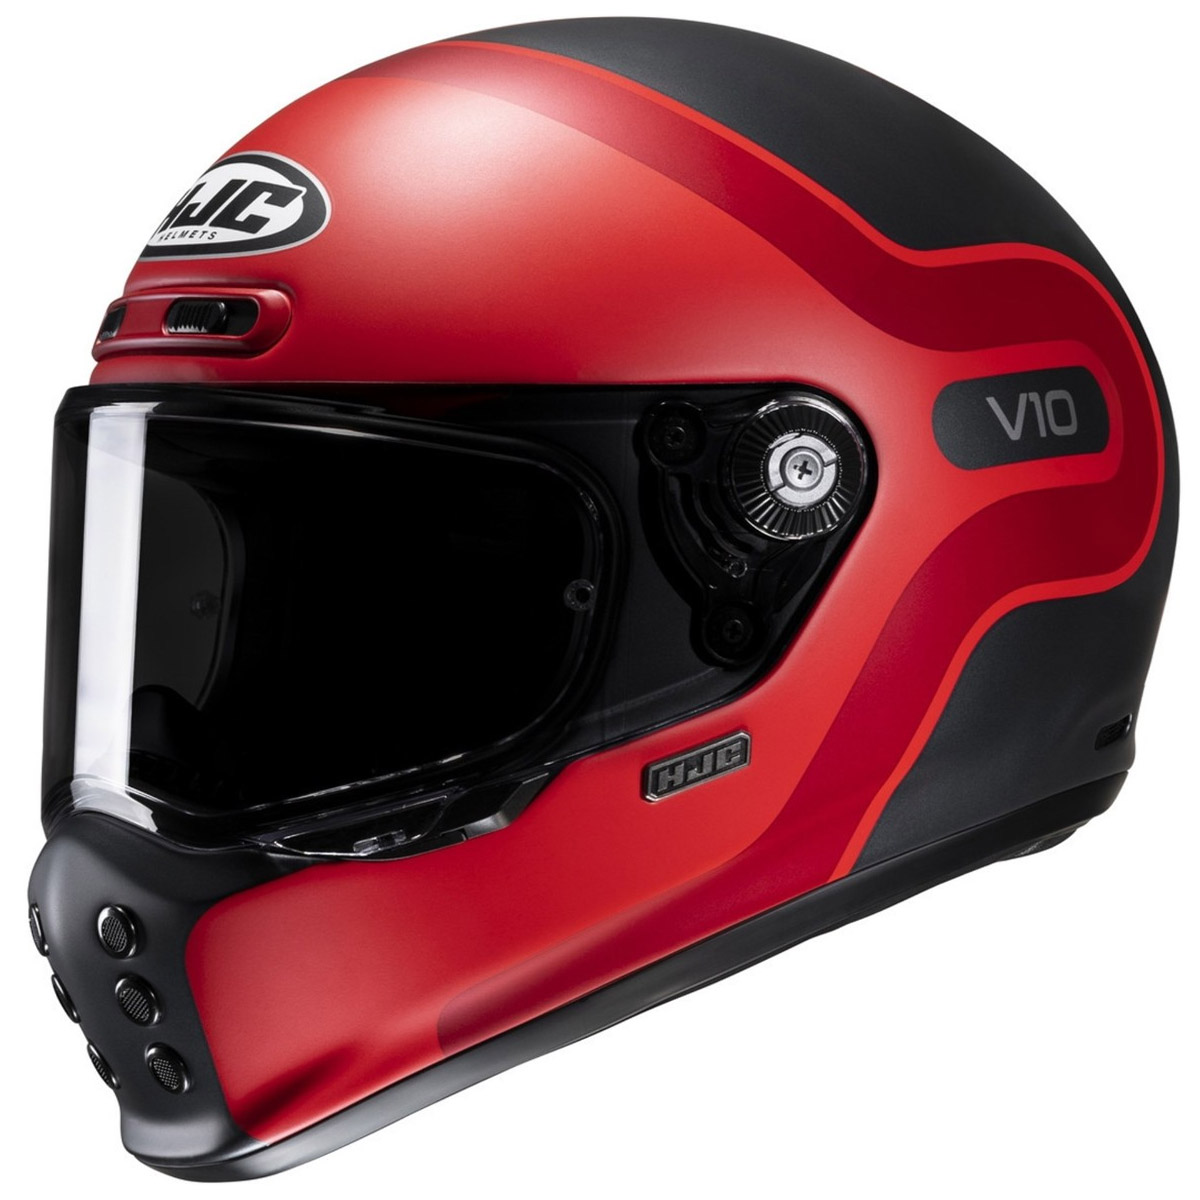 HJC V10 Grape Helm, schwarz-rot